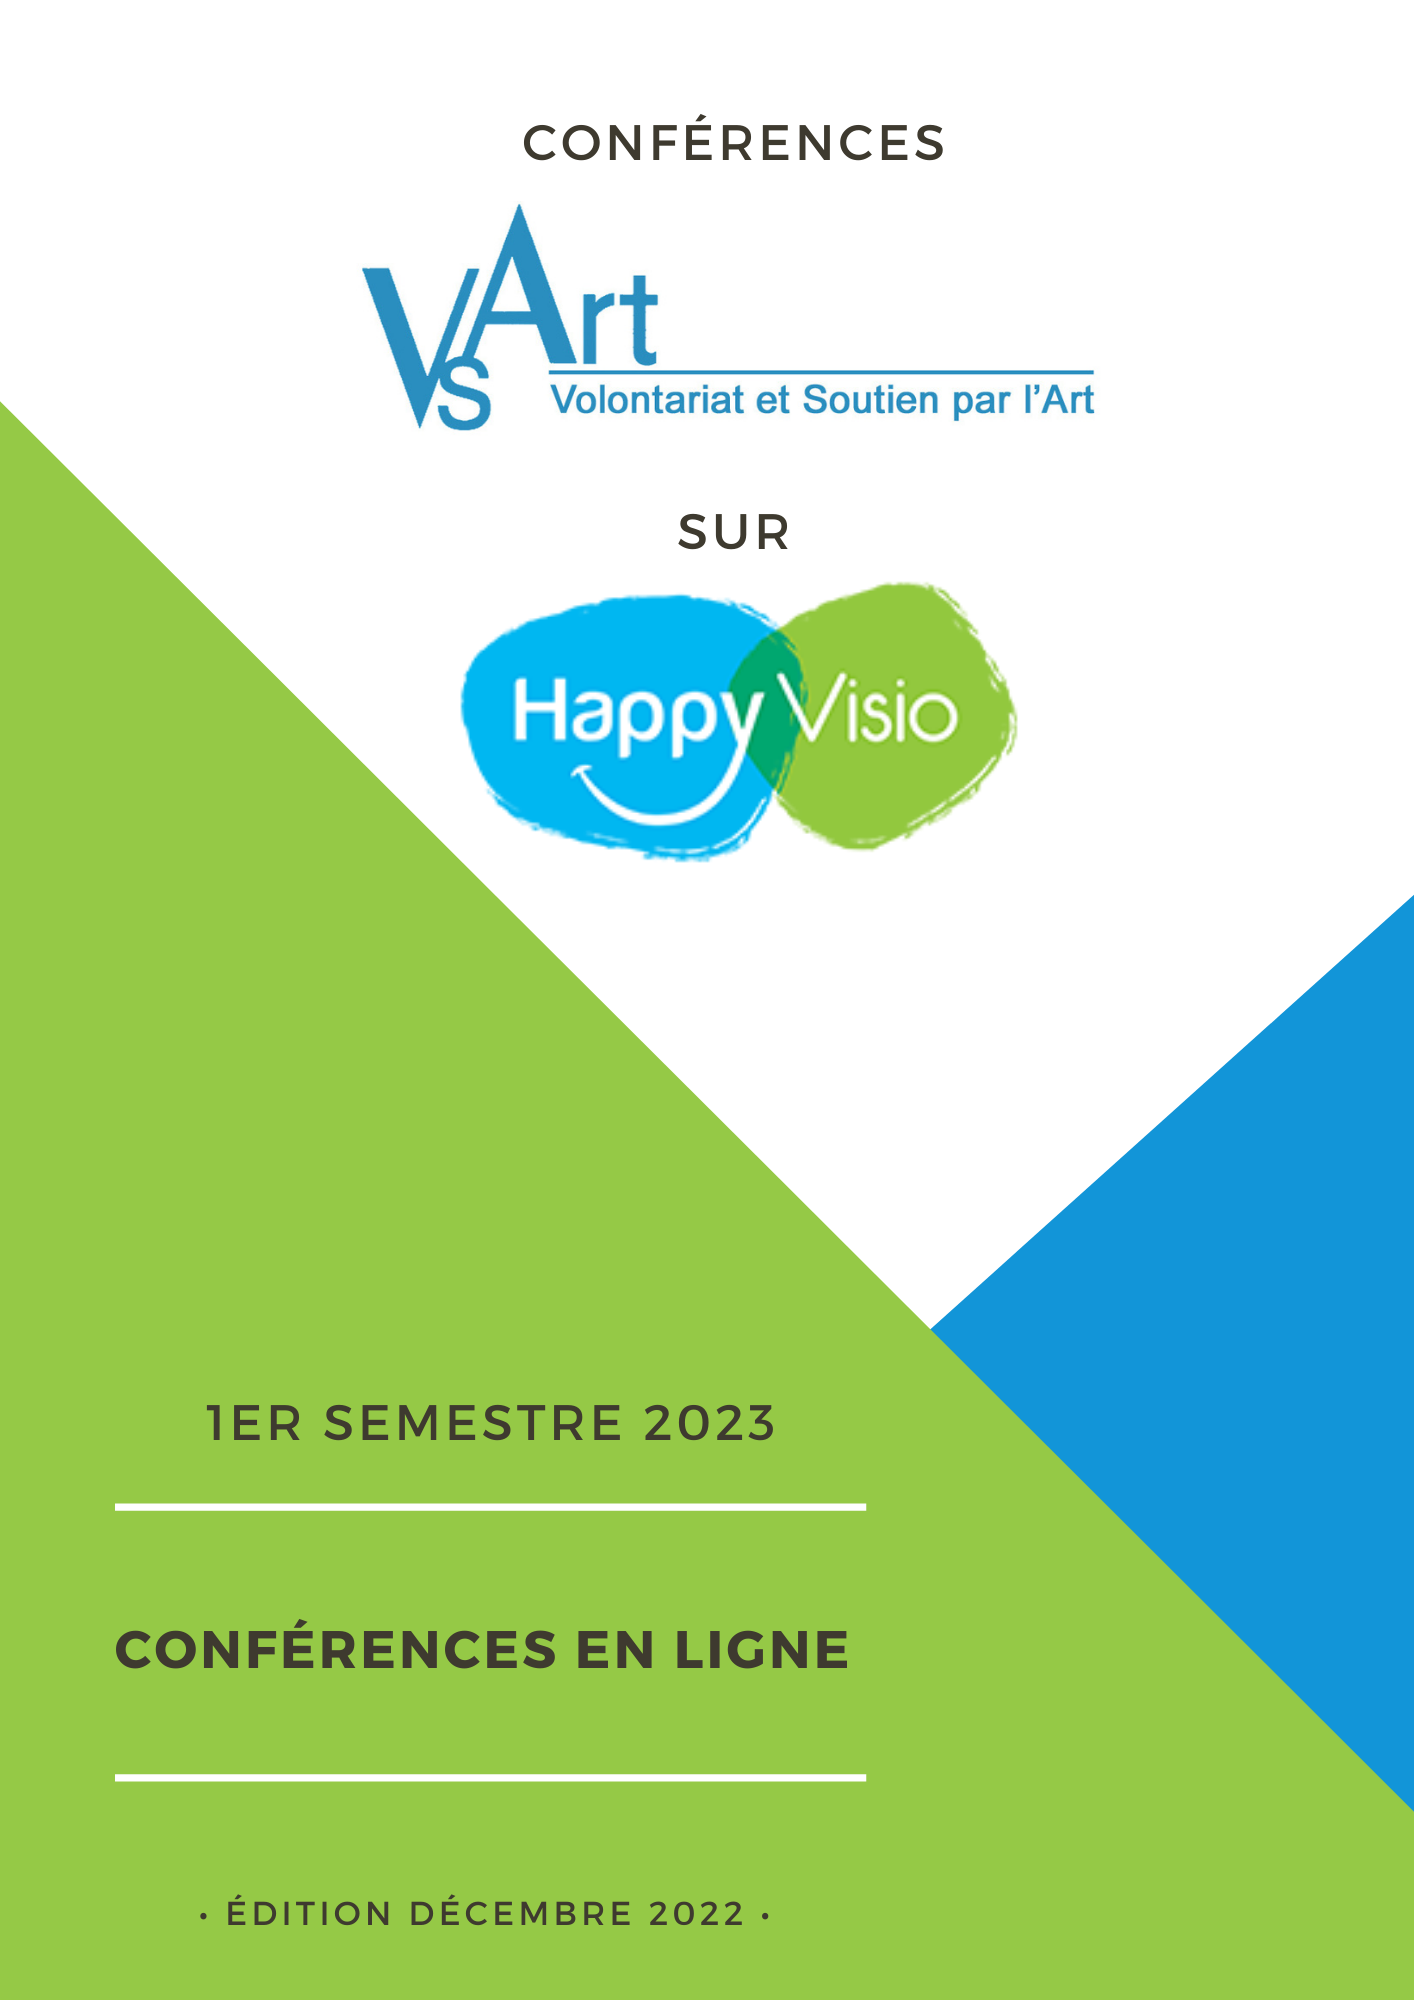 Diffusion conférences VSArt sur plateforme HappyVisio 1er trimestre 2023